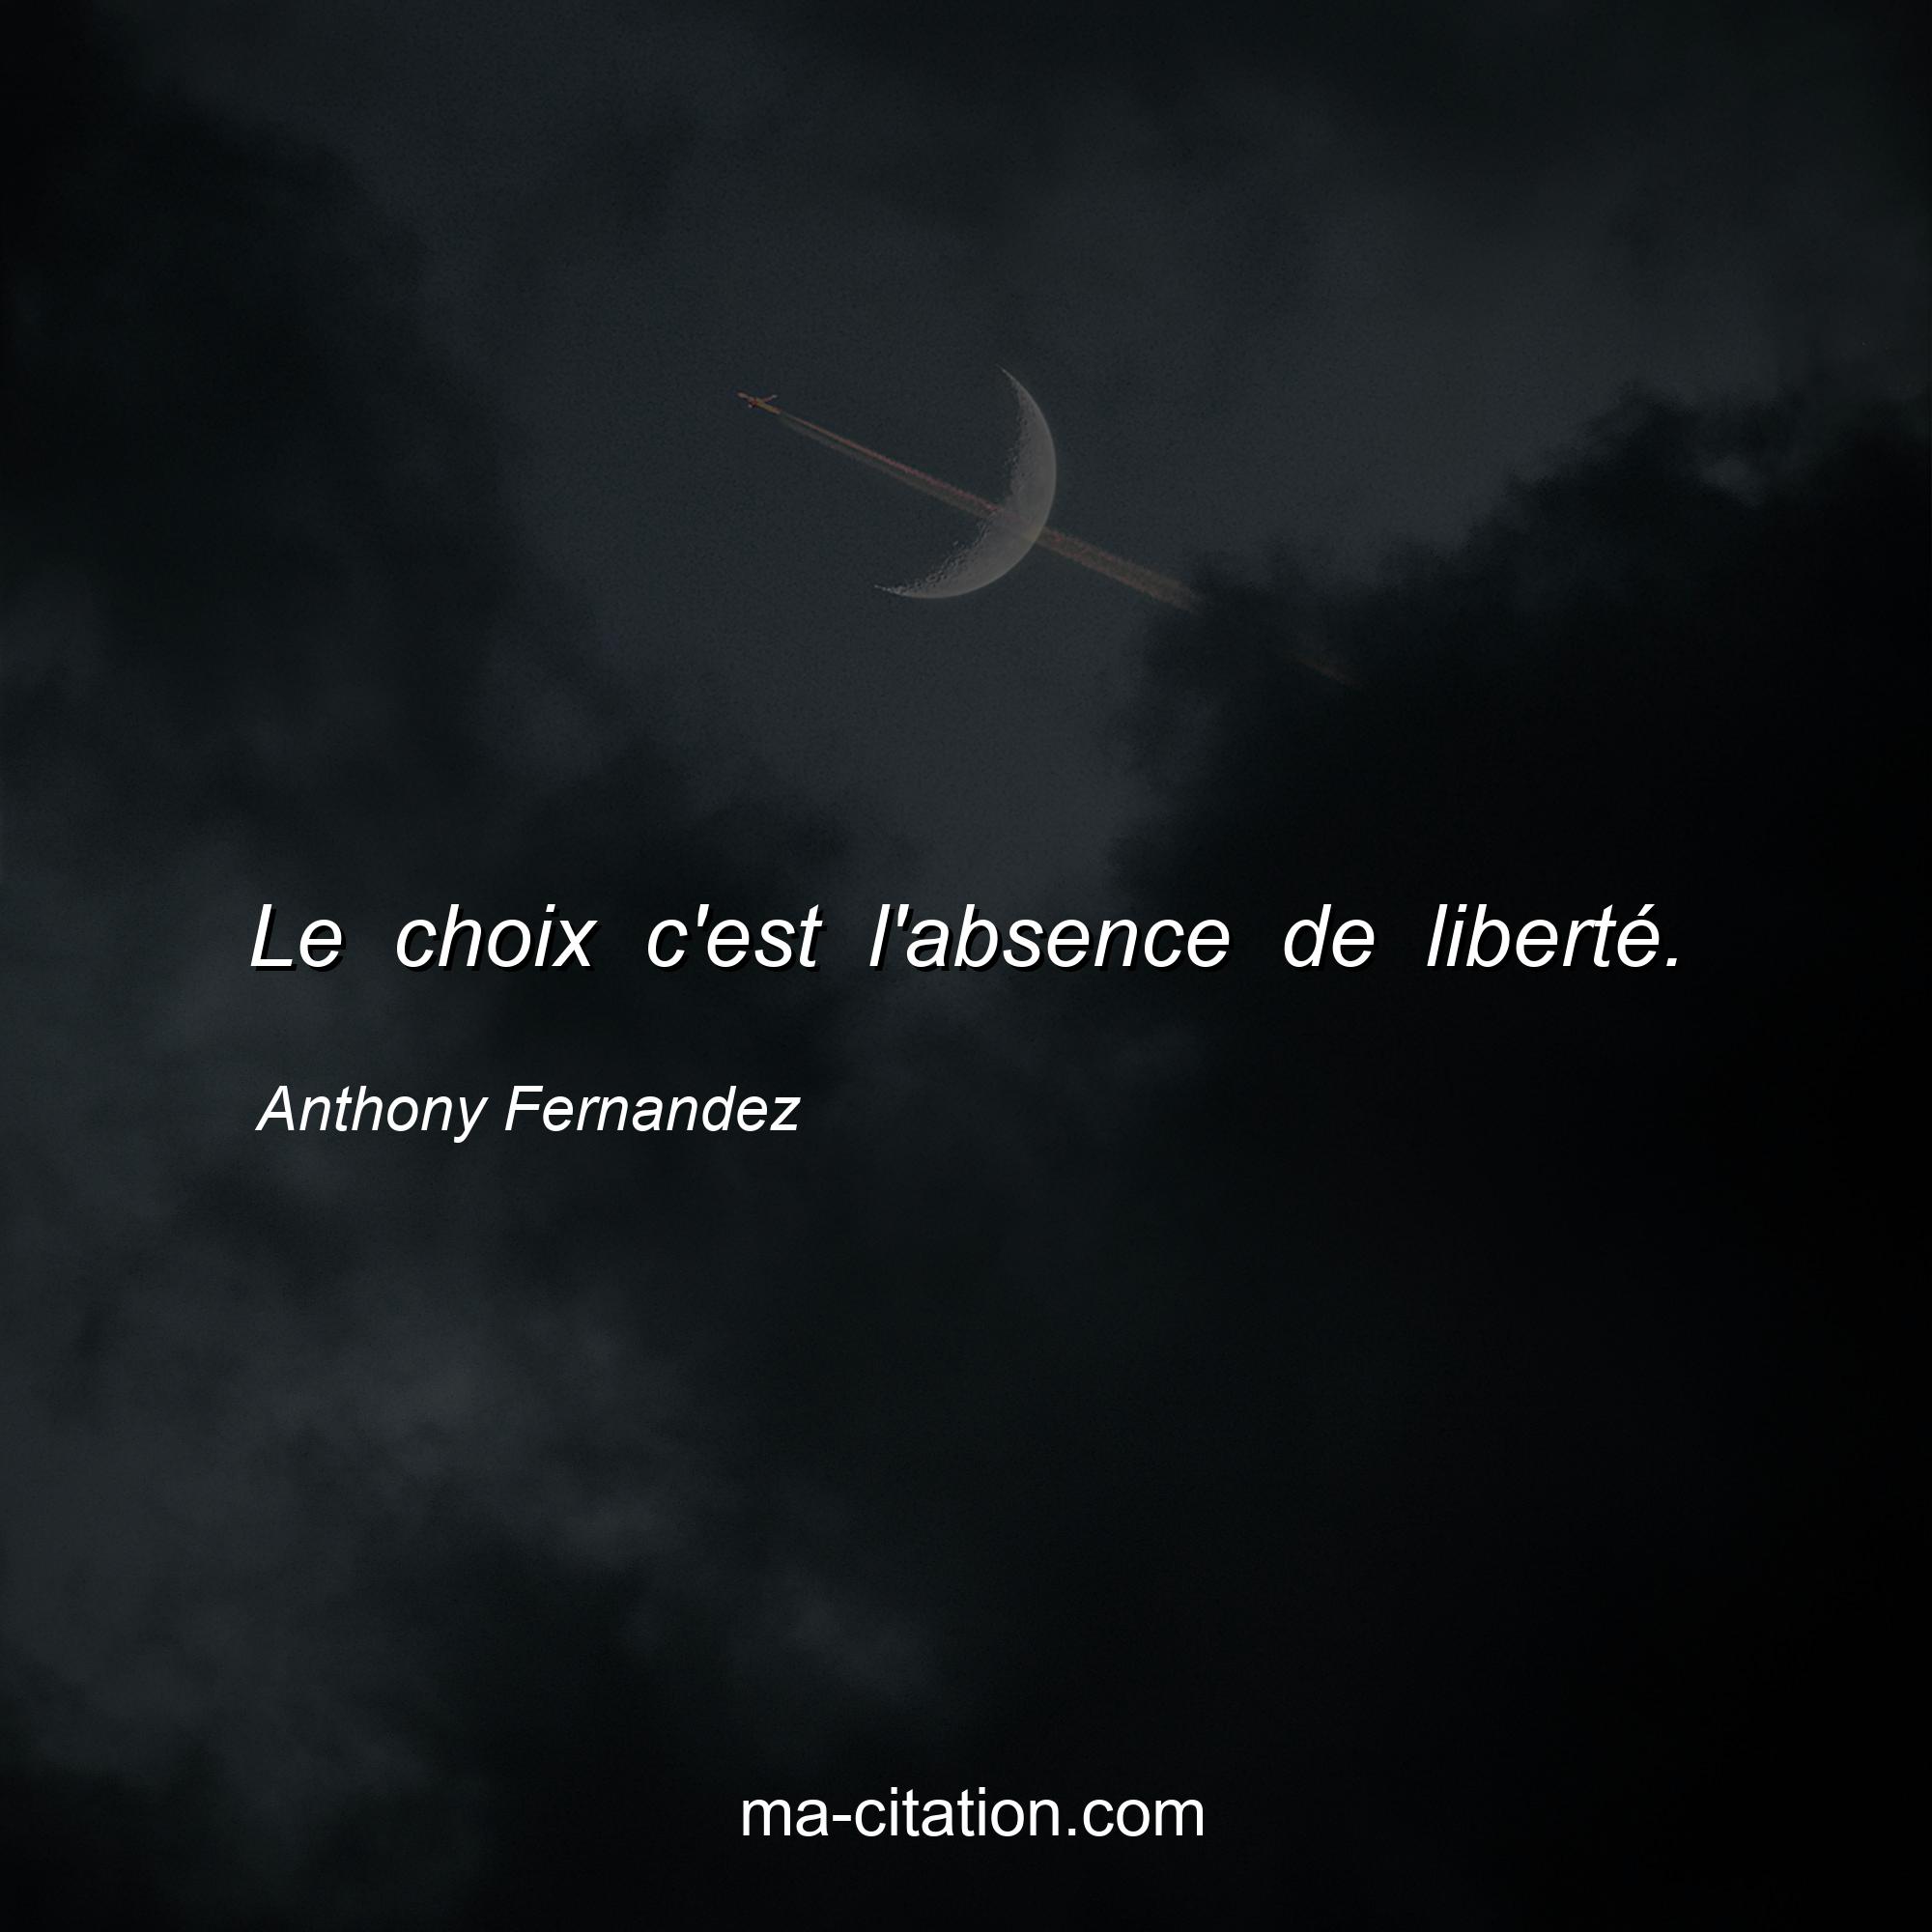 Anthony Fernandez : Le choix c'est l'absence de liberté.